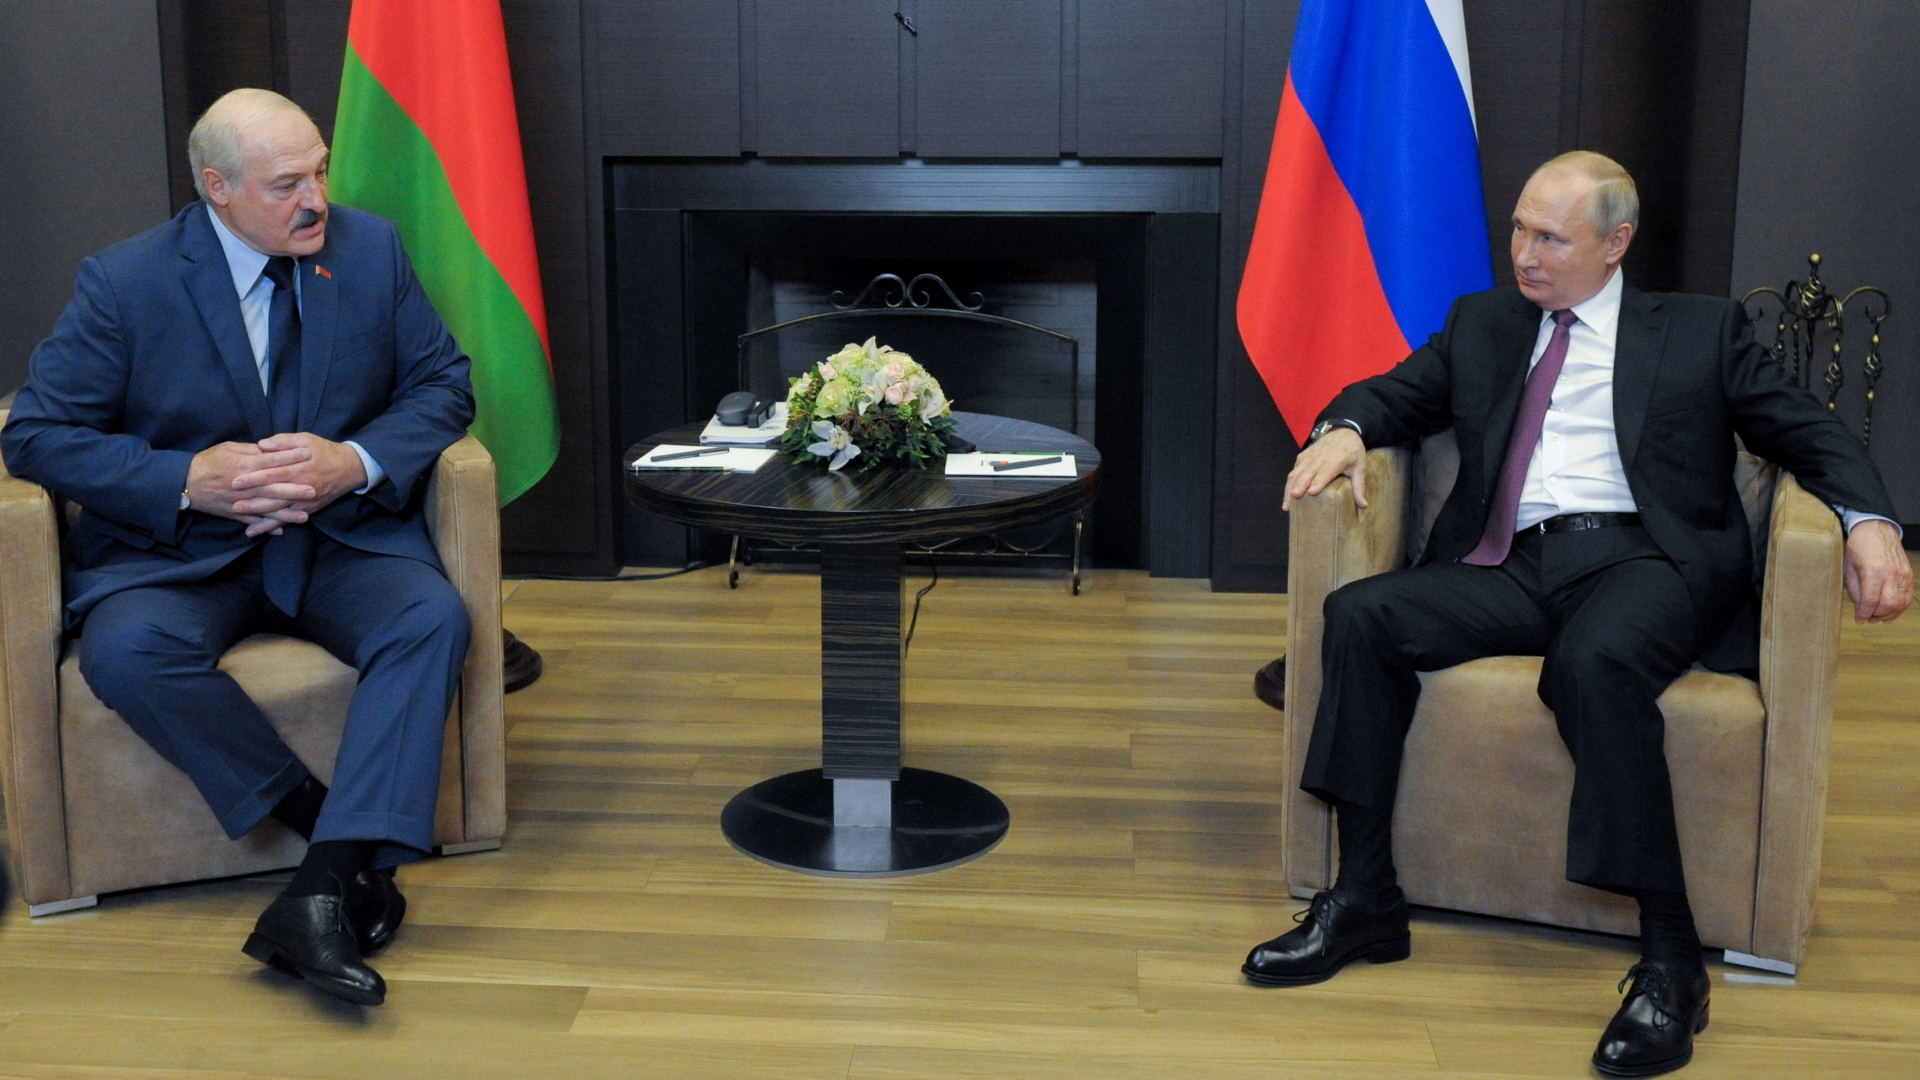 Der belarusische Machthaber Lukaschenko und der russische Präsident Putin bei einem Treffen in Sotschi | via REUTERS